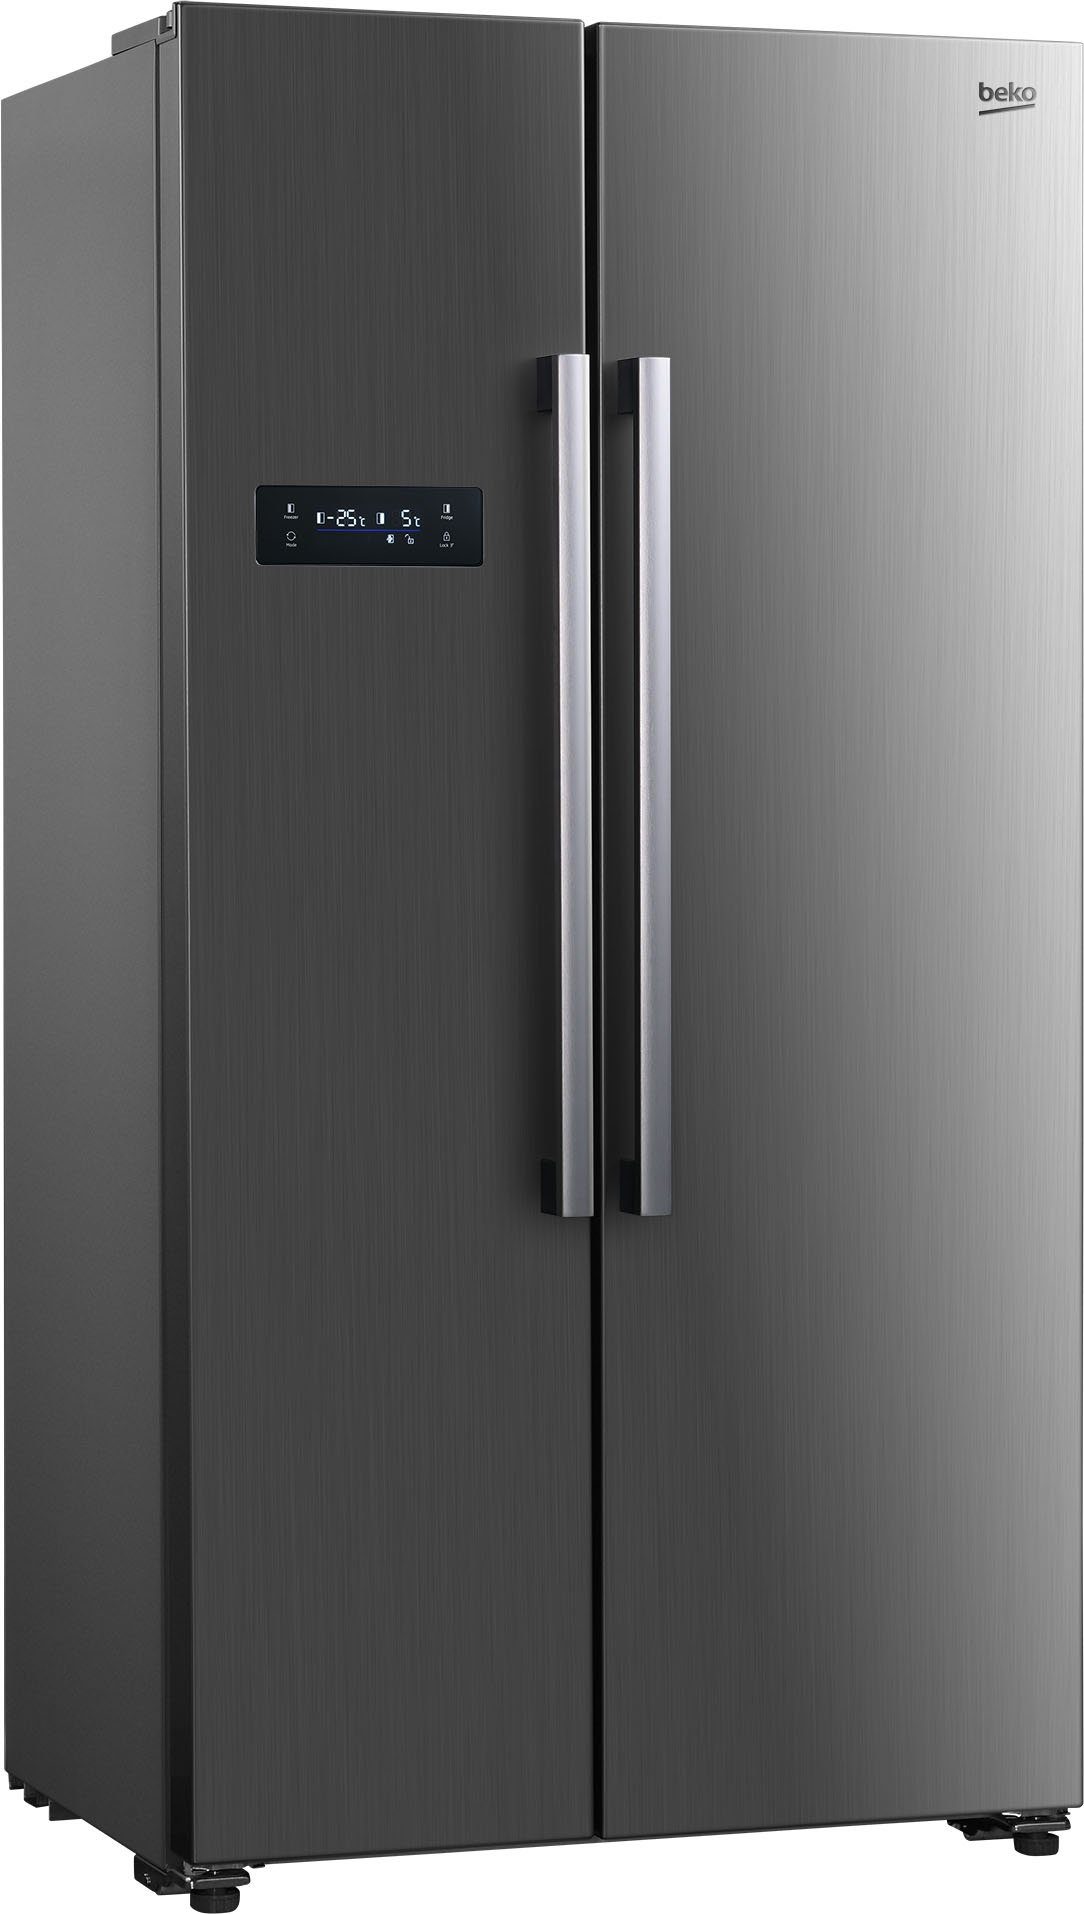 Beko Side-by-Side-Kühlschrank online kaufen | OTTO